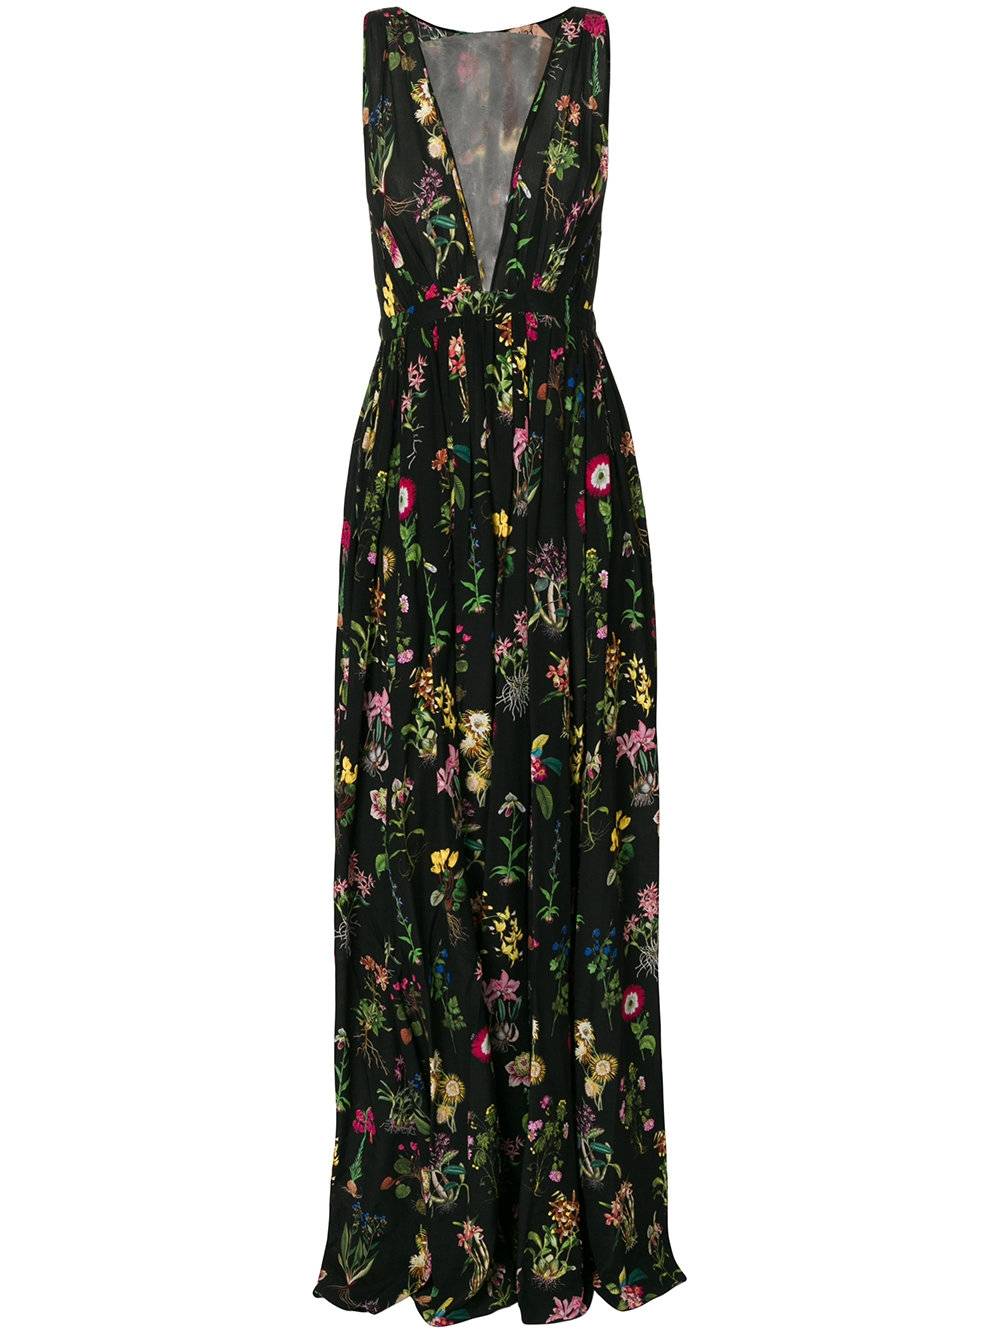 Модные тенденции: 17 невероятно красивых платьев с цветочным принтом